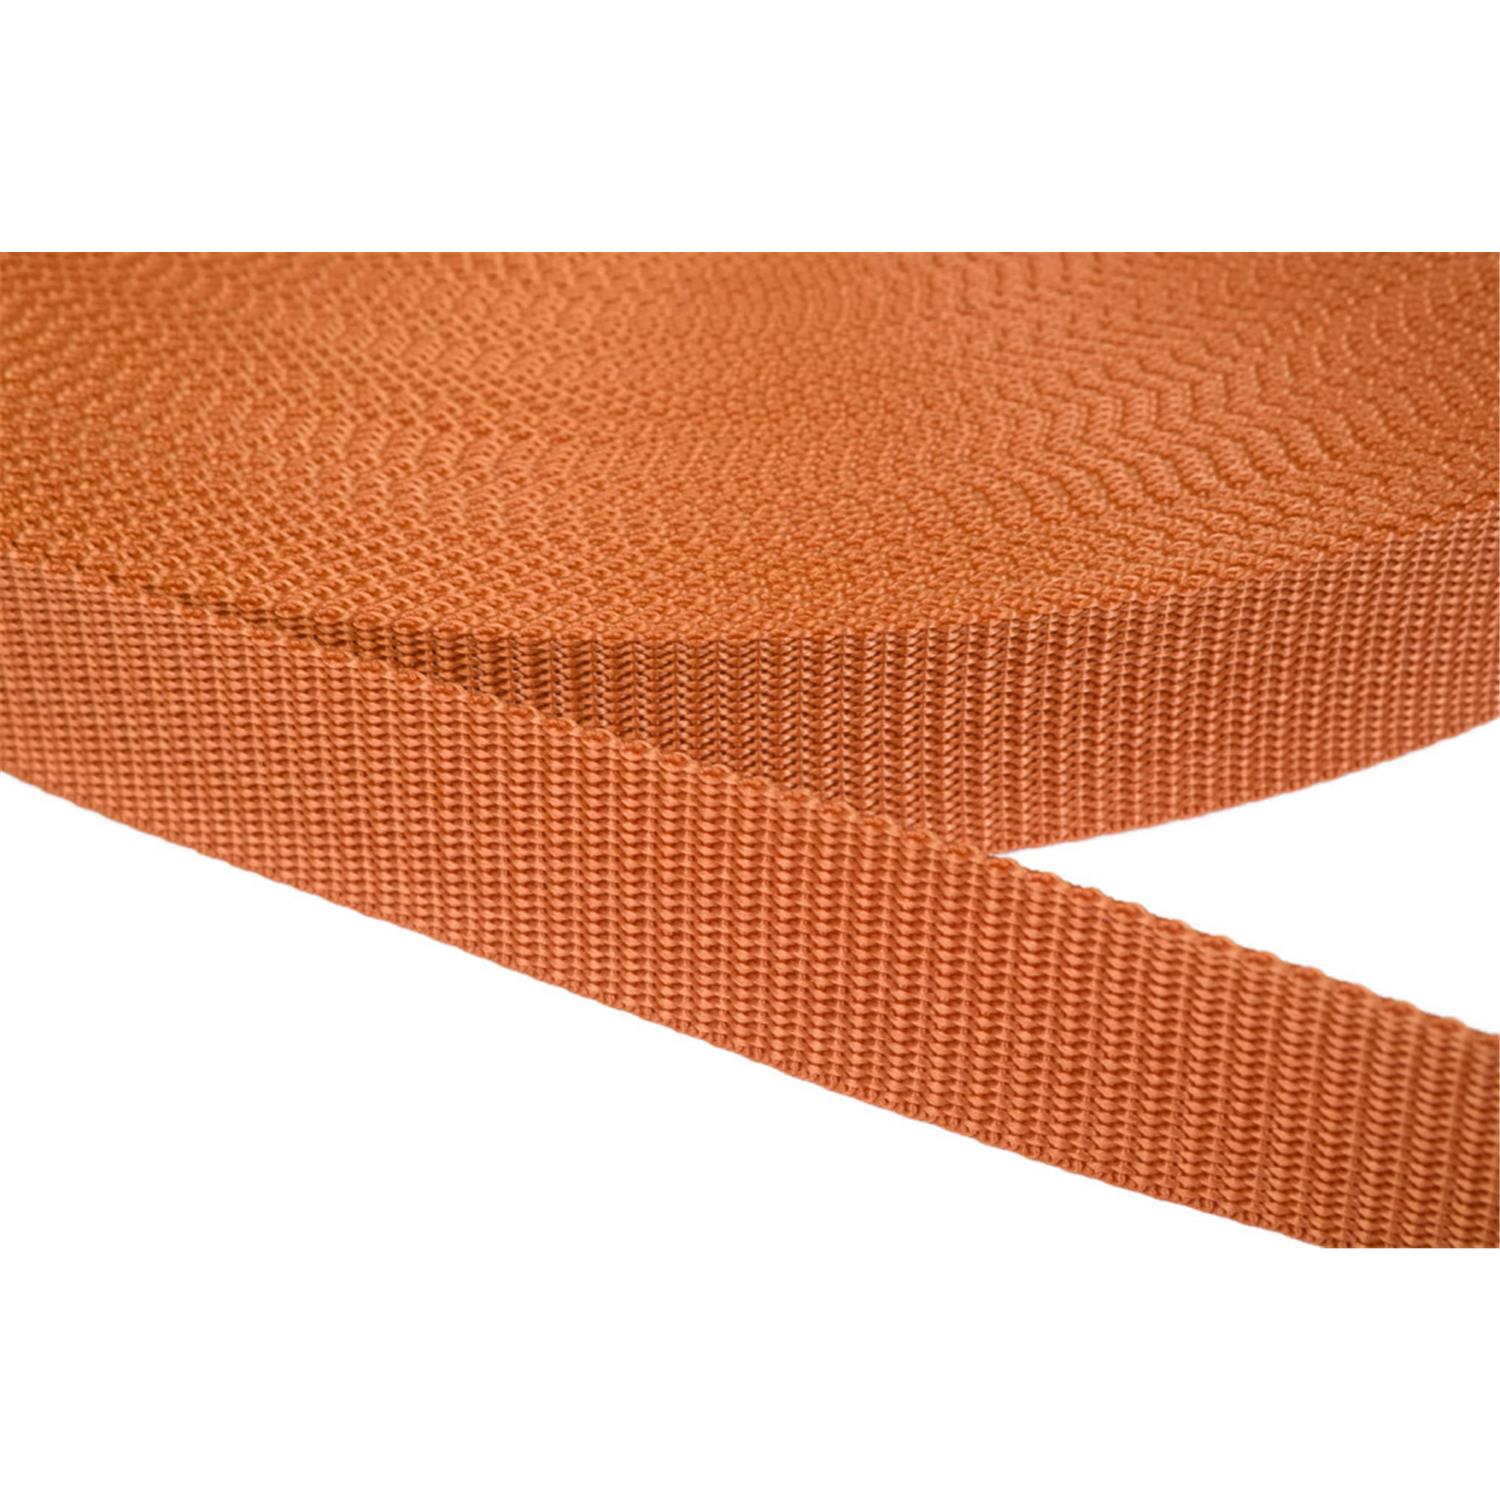 Gurtband 30mm breit aus Polypropylen in 41 Farben 05 - ockerbraun 6 Meter